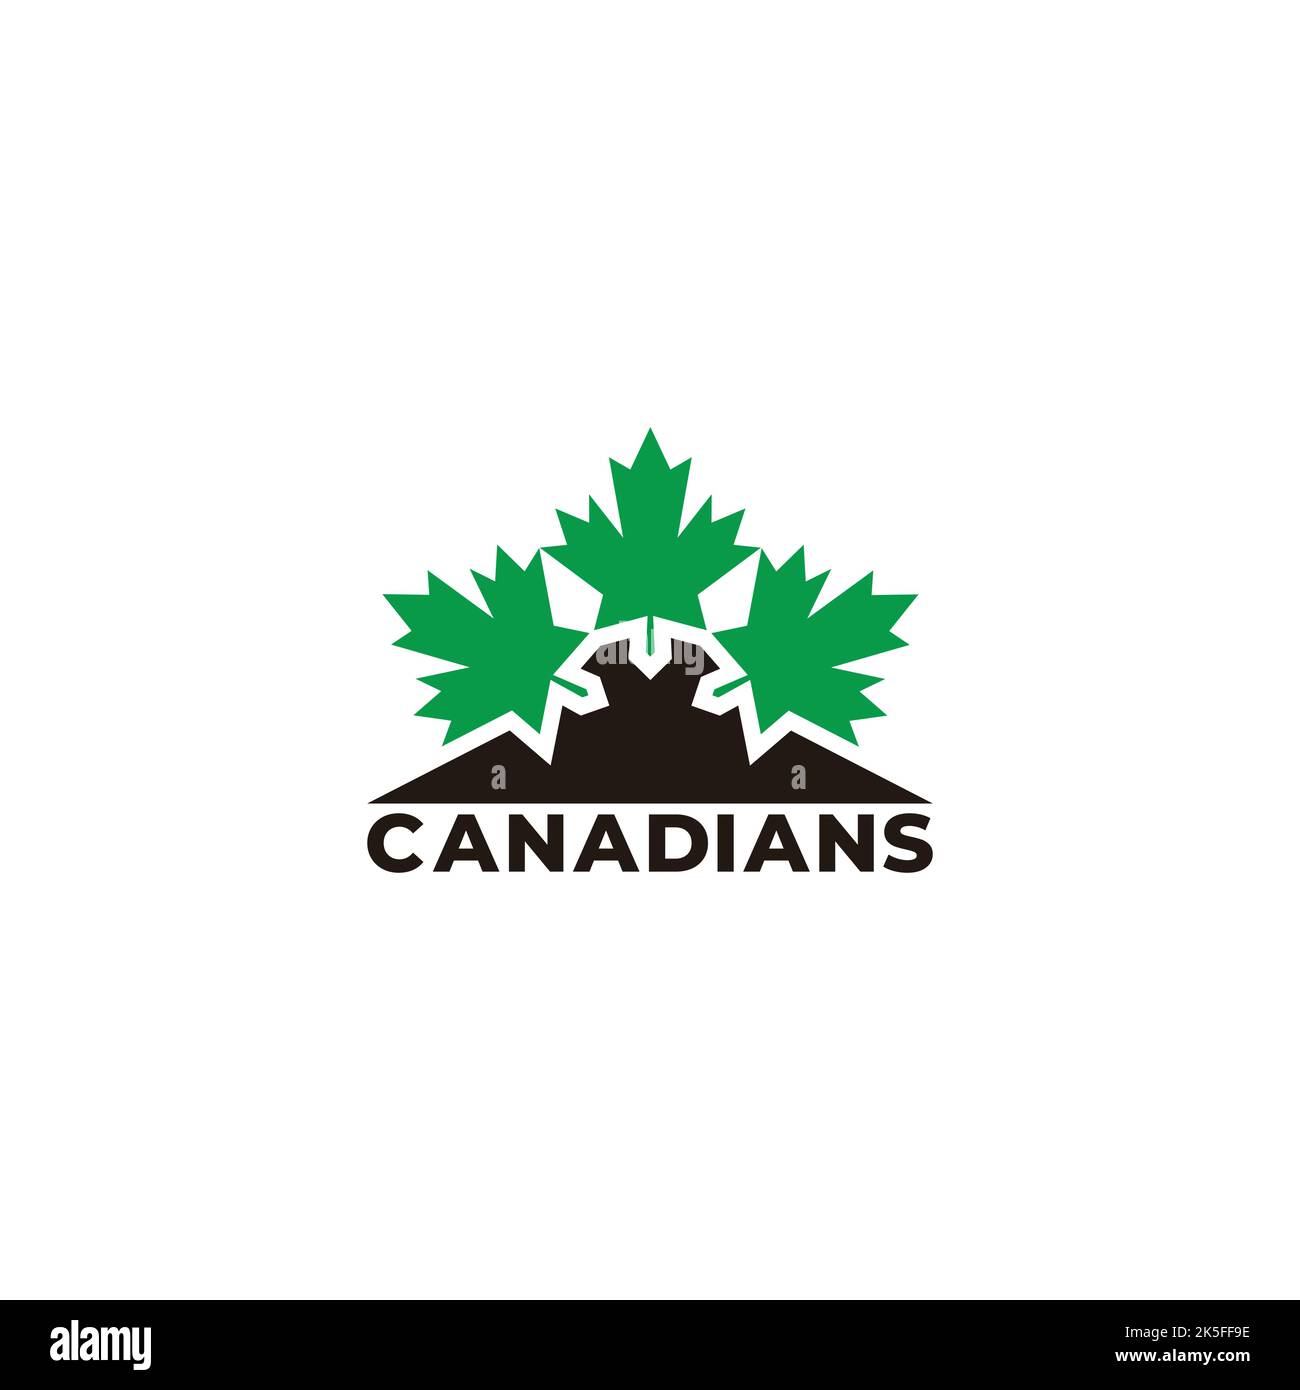 canadian green leaf mountain logo vector Stock Vector